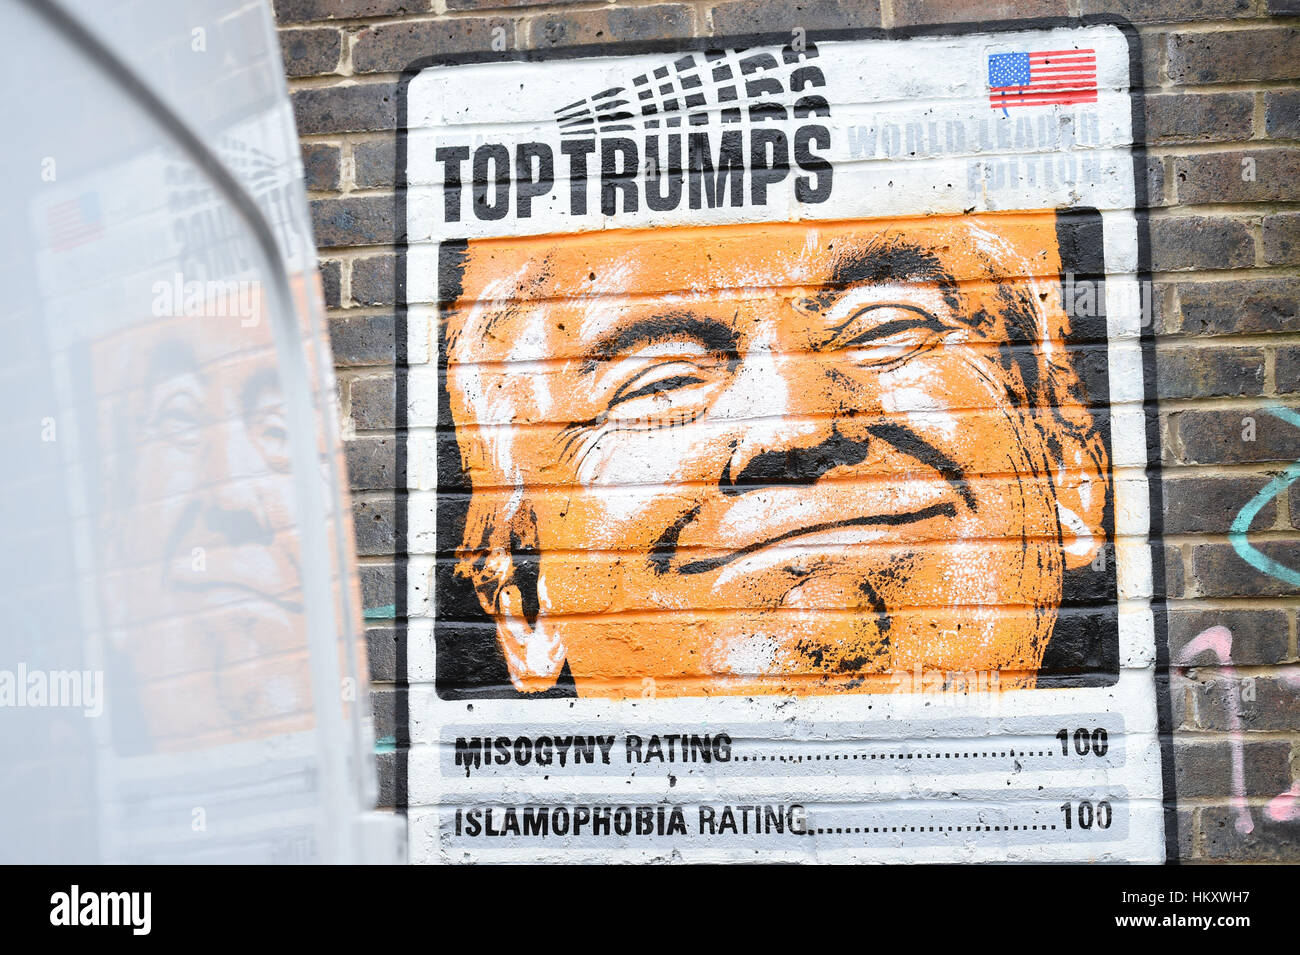 Un pezzo di graffiti su un muro in Shoreditch, East London, utilizza una parodia del Top trionfi scheda di gioco per criticare il Presidente statunitense Donald Trump. Foto Stock